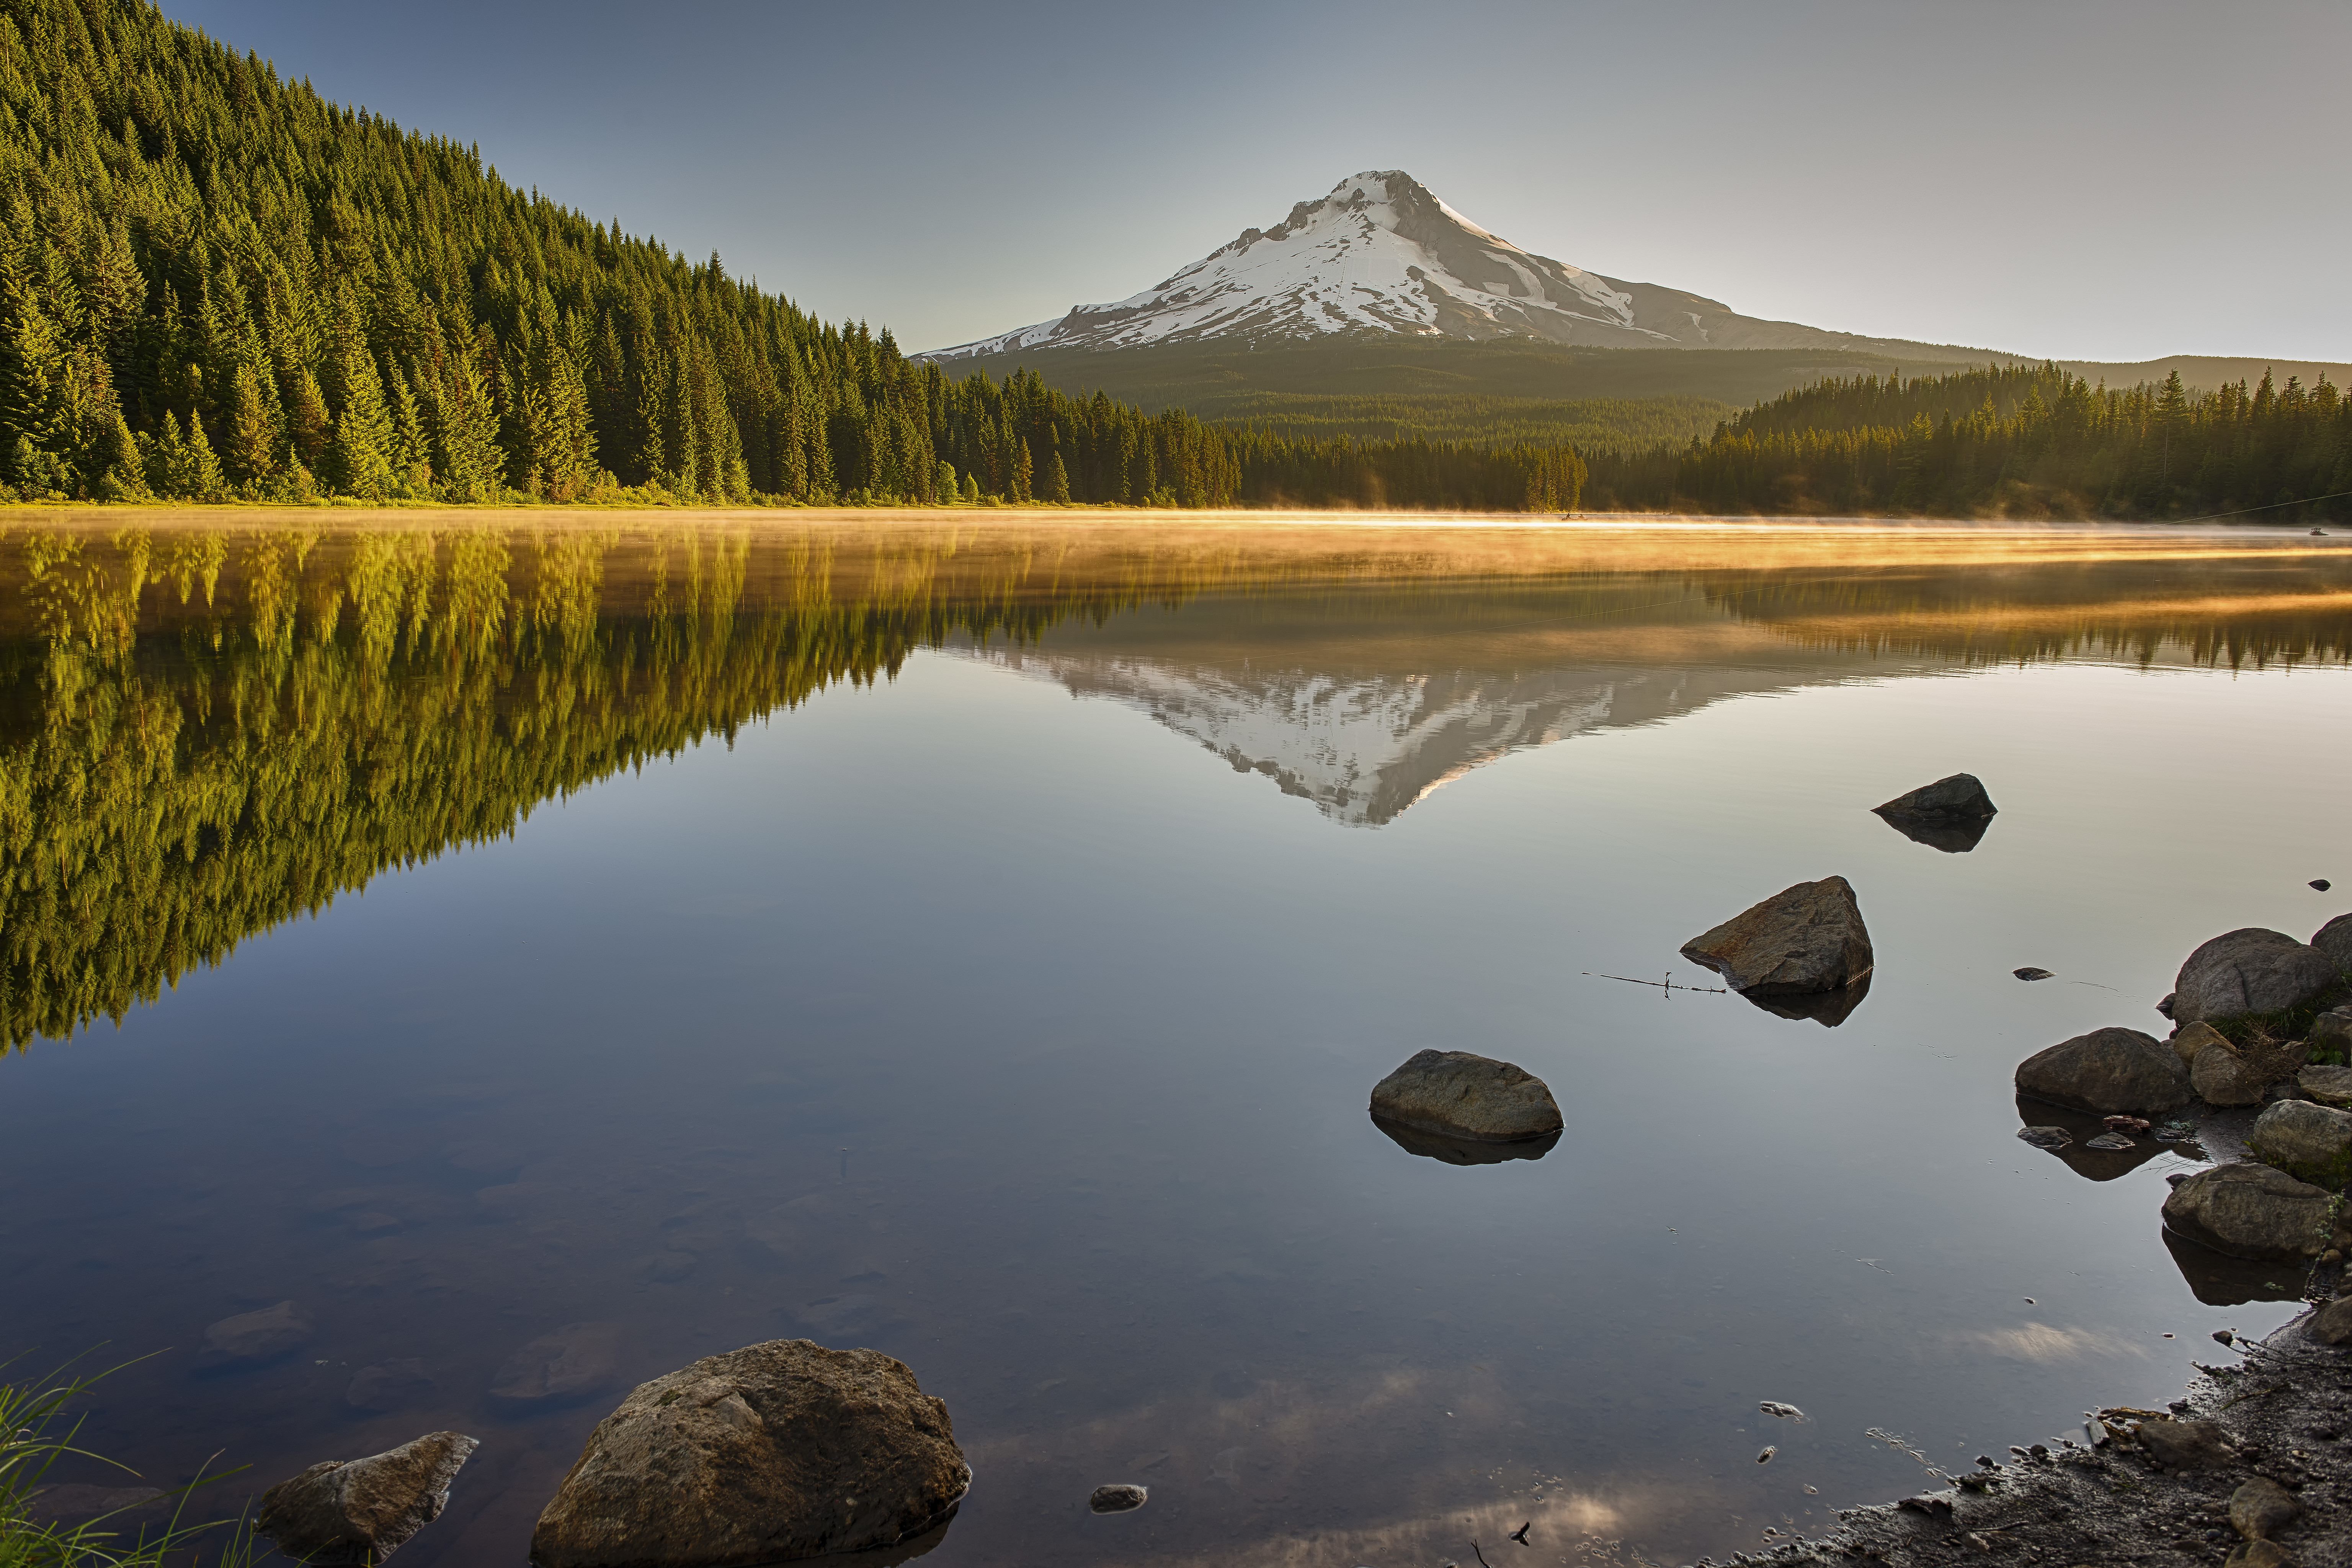 Trillium Lake Reflection Landscape Photography Oregon Sunrise Mount Hood 6144x4096